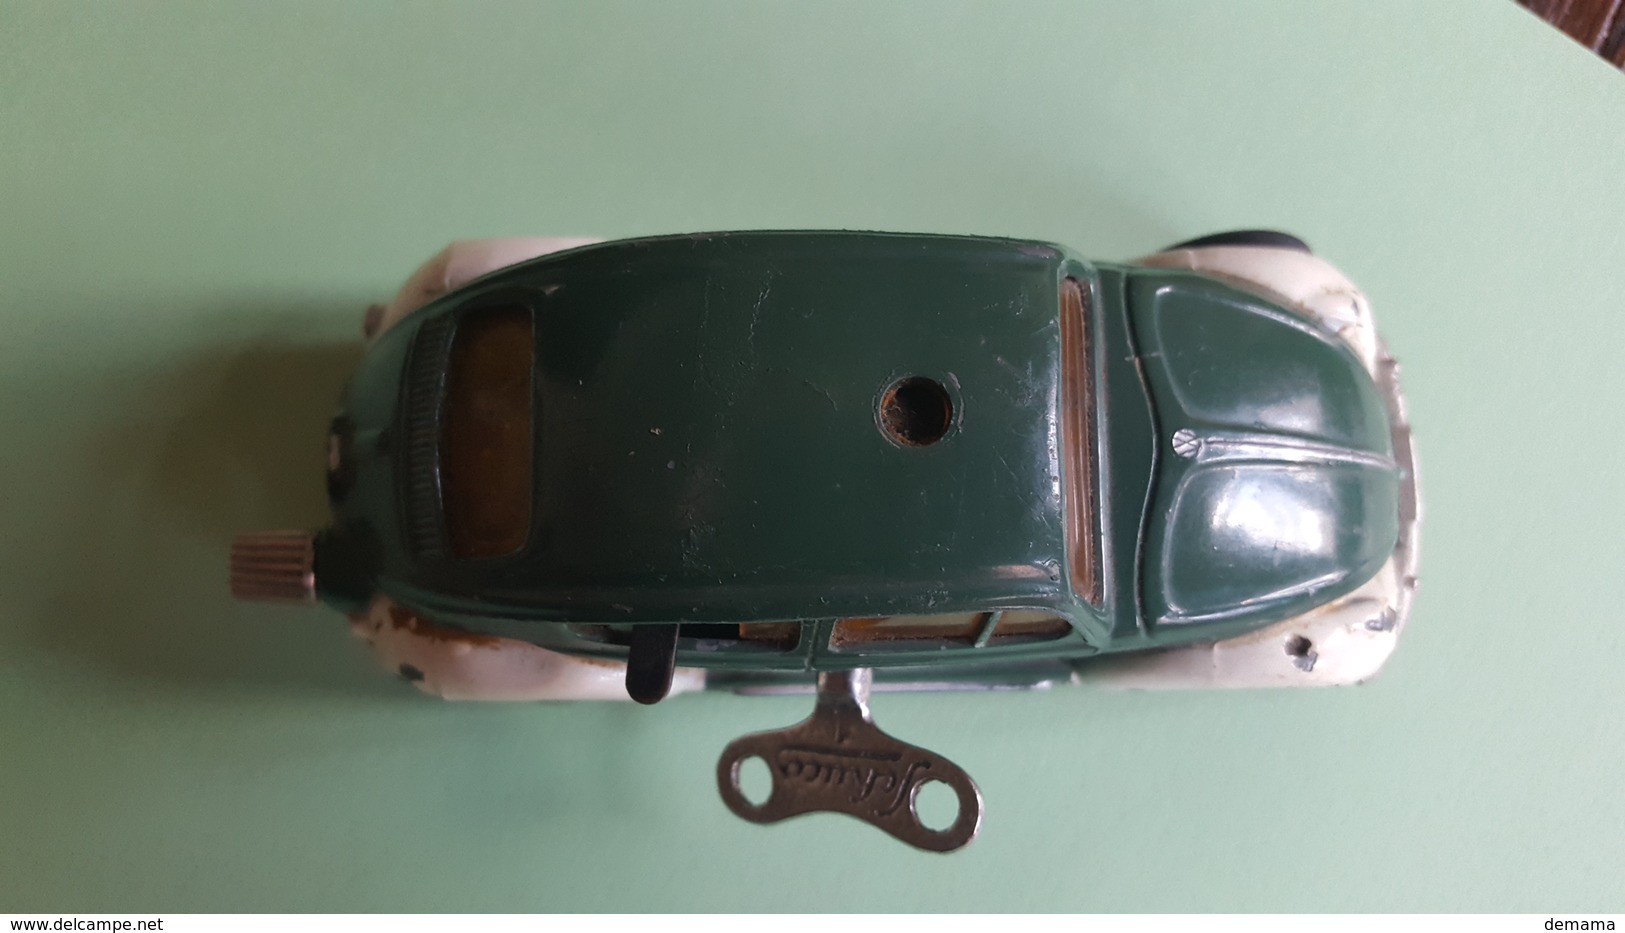 Schuco Micro Racer, 1046; VW, with Schuco key